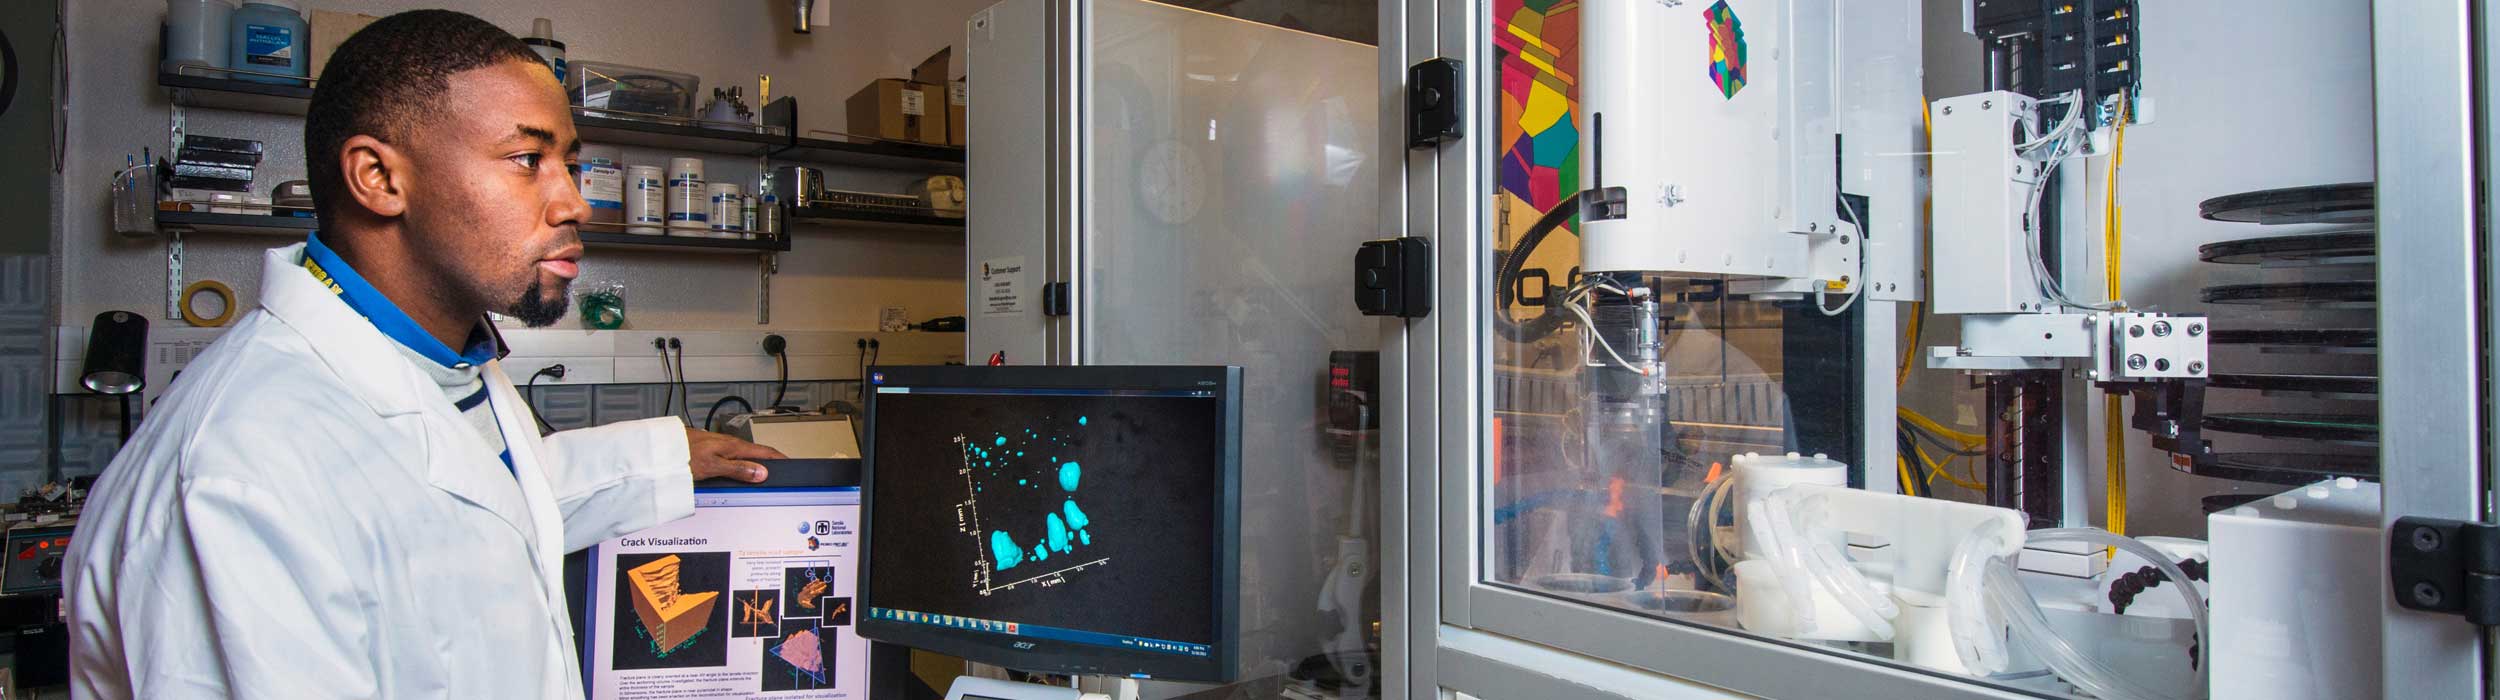 Un immigrants occupant un emploi technique dans un laboratoire de Montréal